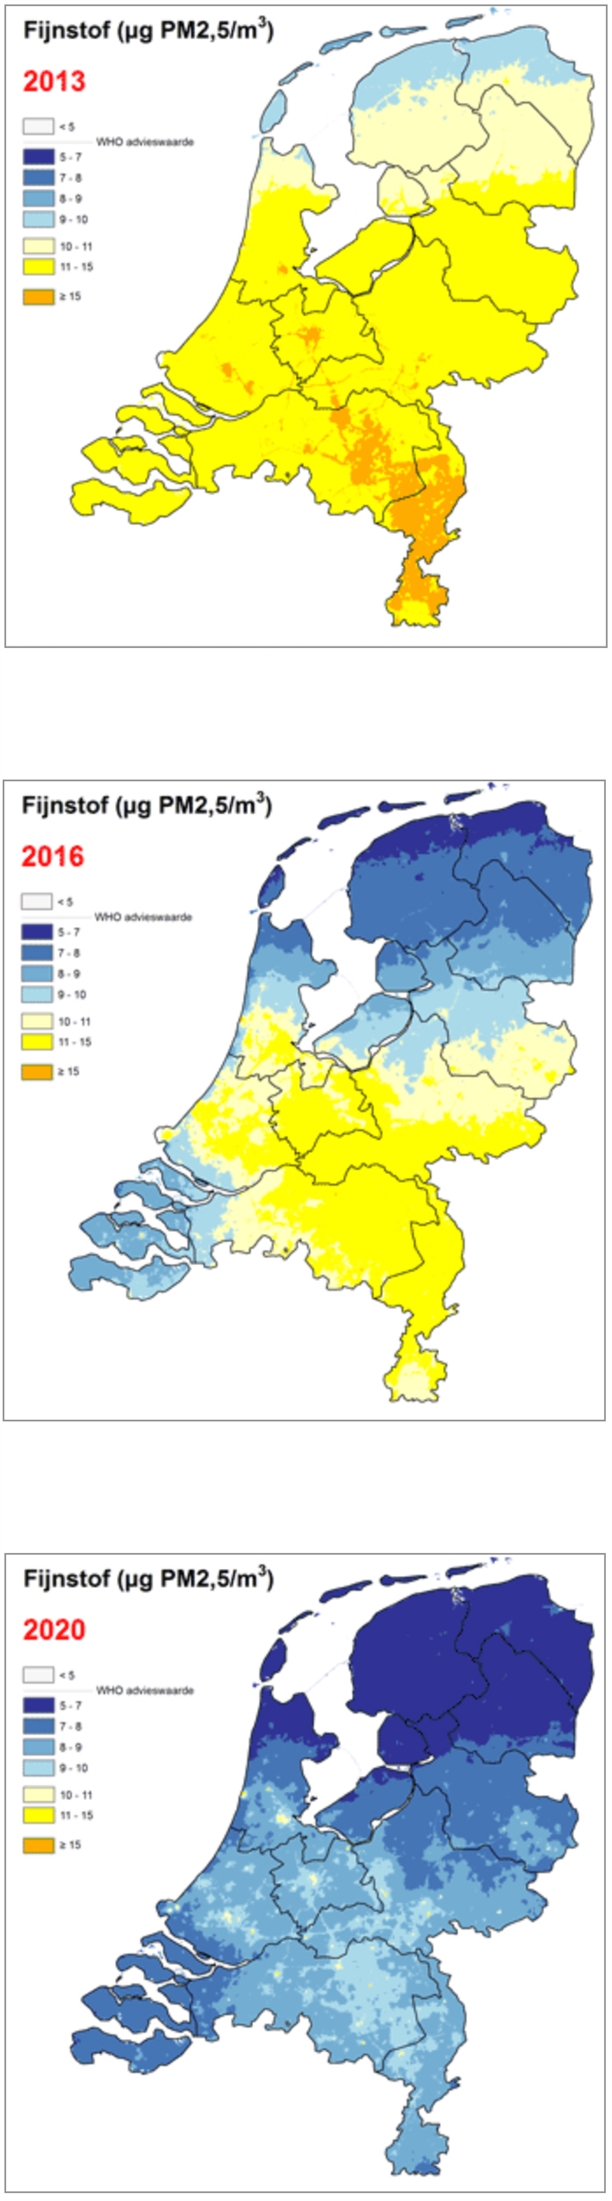 3 kaarten van Nederland waarop de hoeveelheid fijnstof in 2013, 2016 en 2020 te zien is